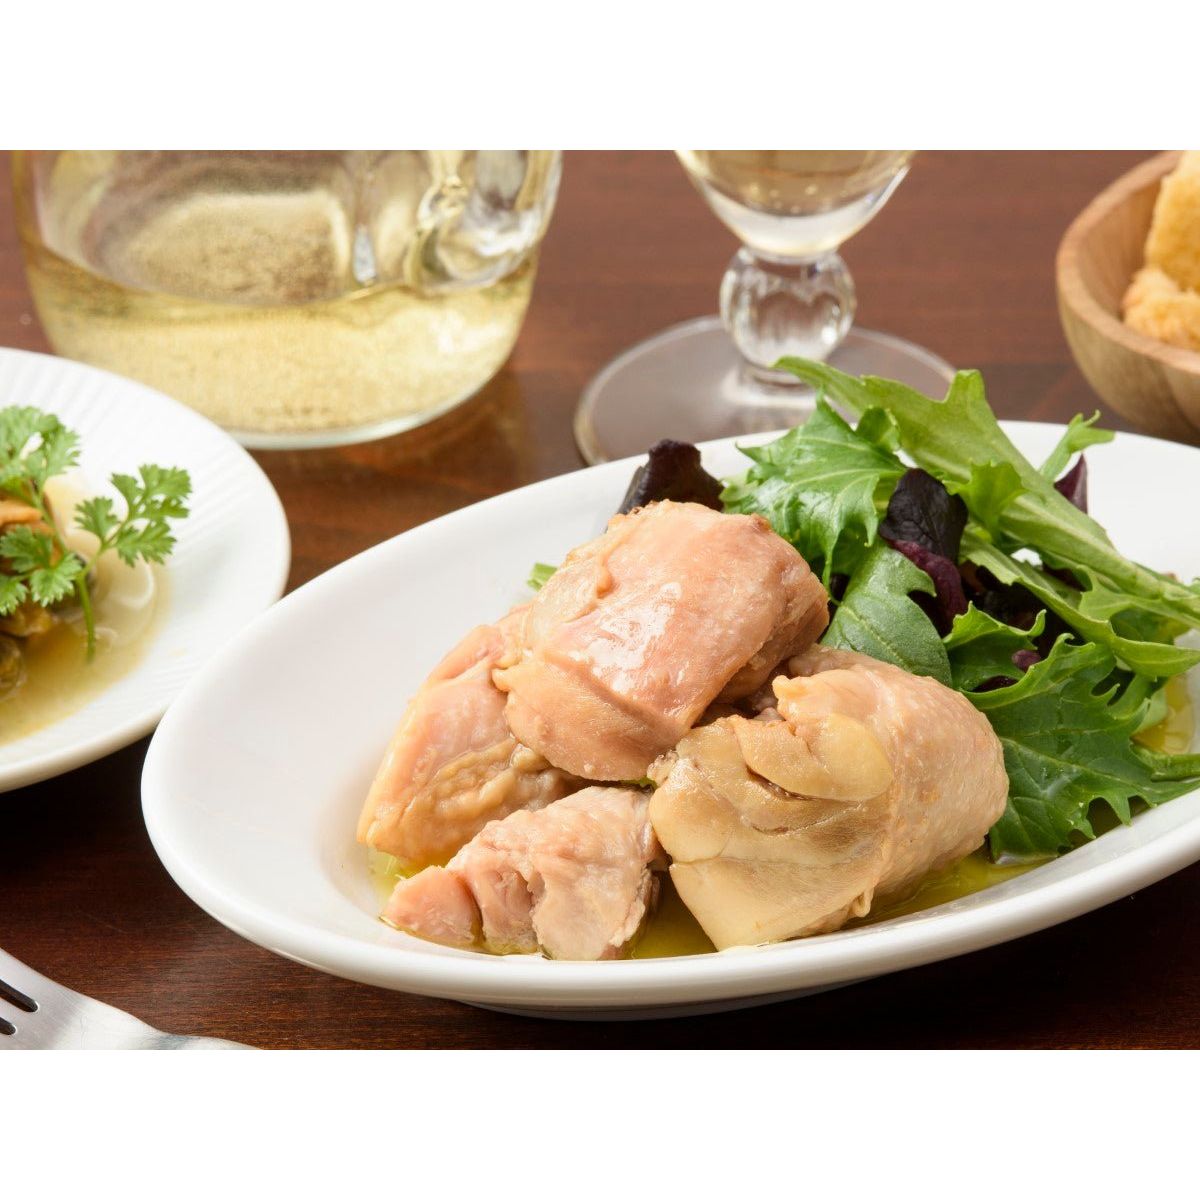 K&K peut tsumate mate au thé poulet poulet d'olive mariné d'olive